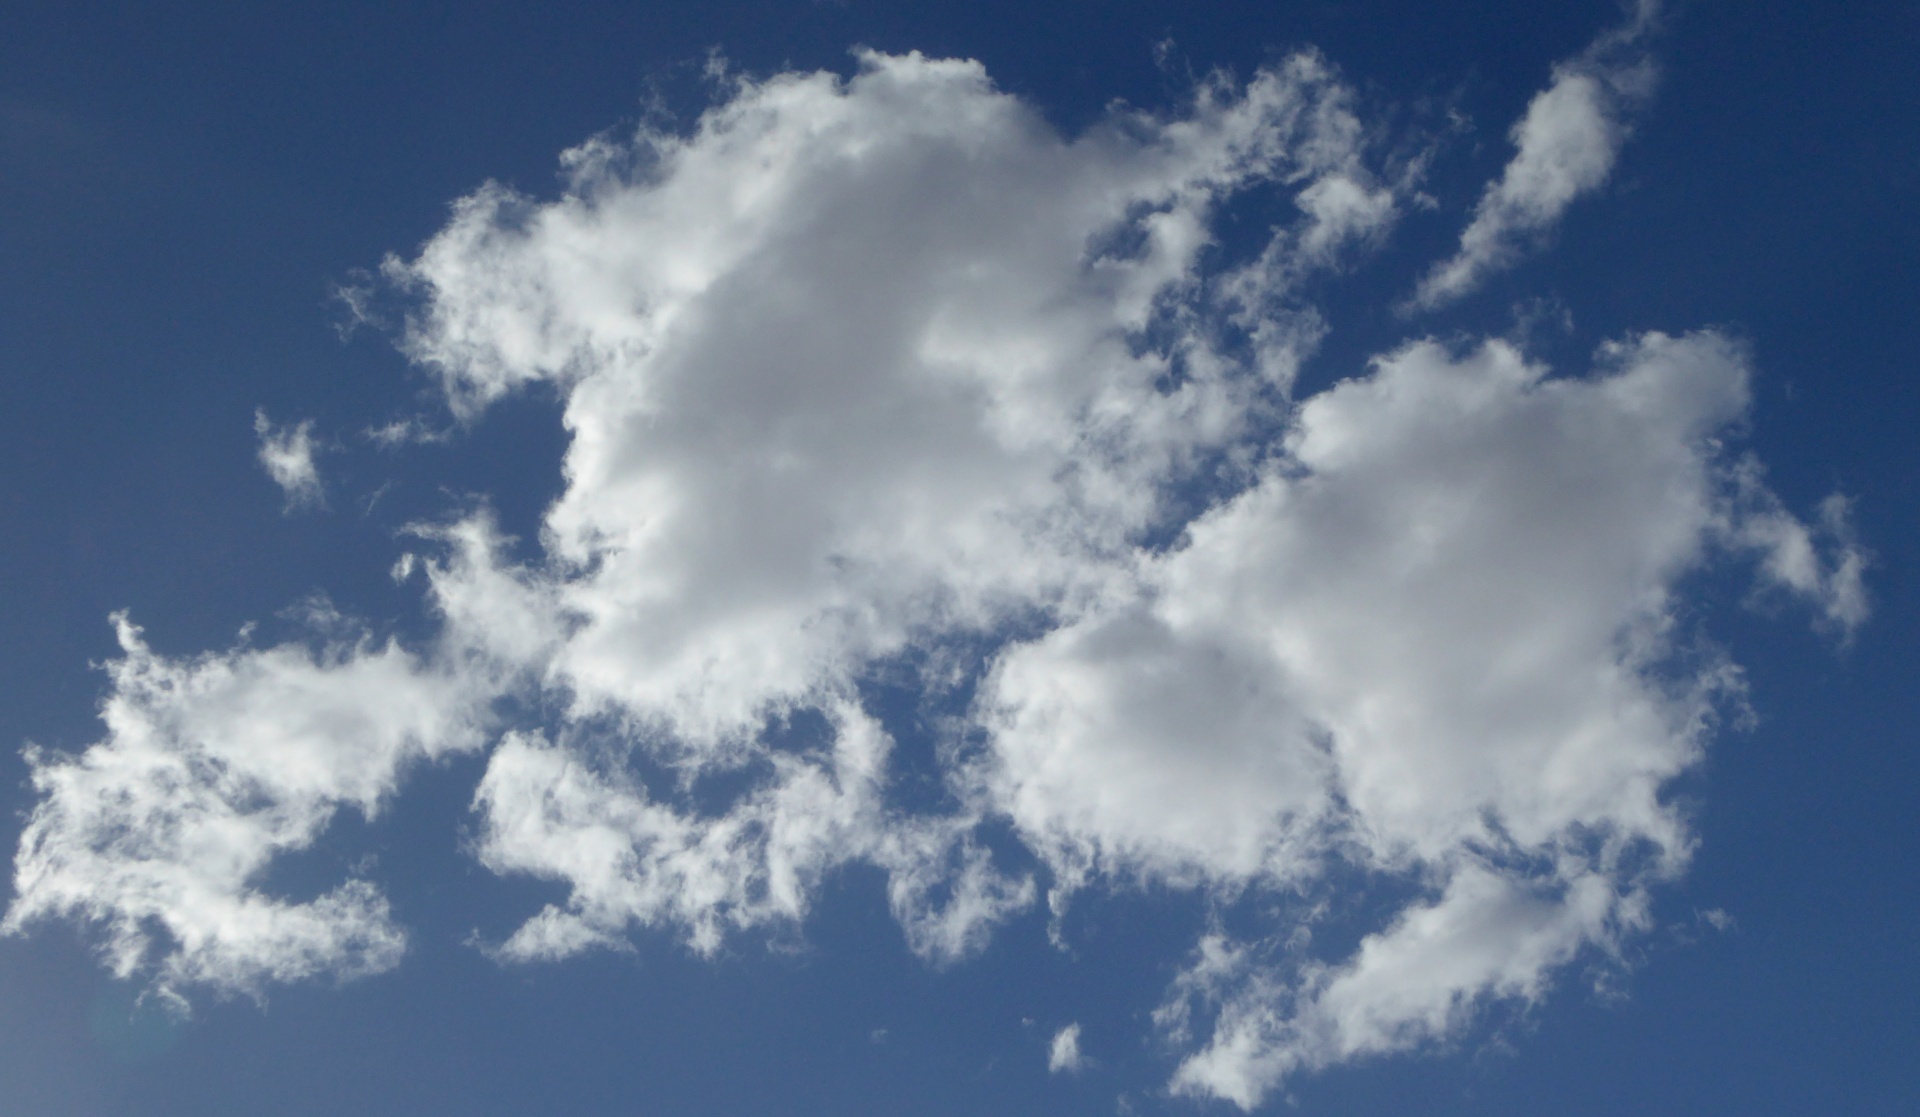 Пушистые облака проплывают. "Облака" (по небу плывут облака) группа "небо". Круглые облака. Небо с белыми облаками. Белое облако.